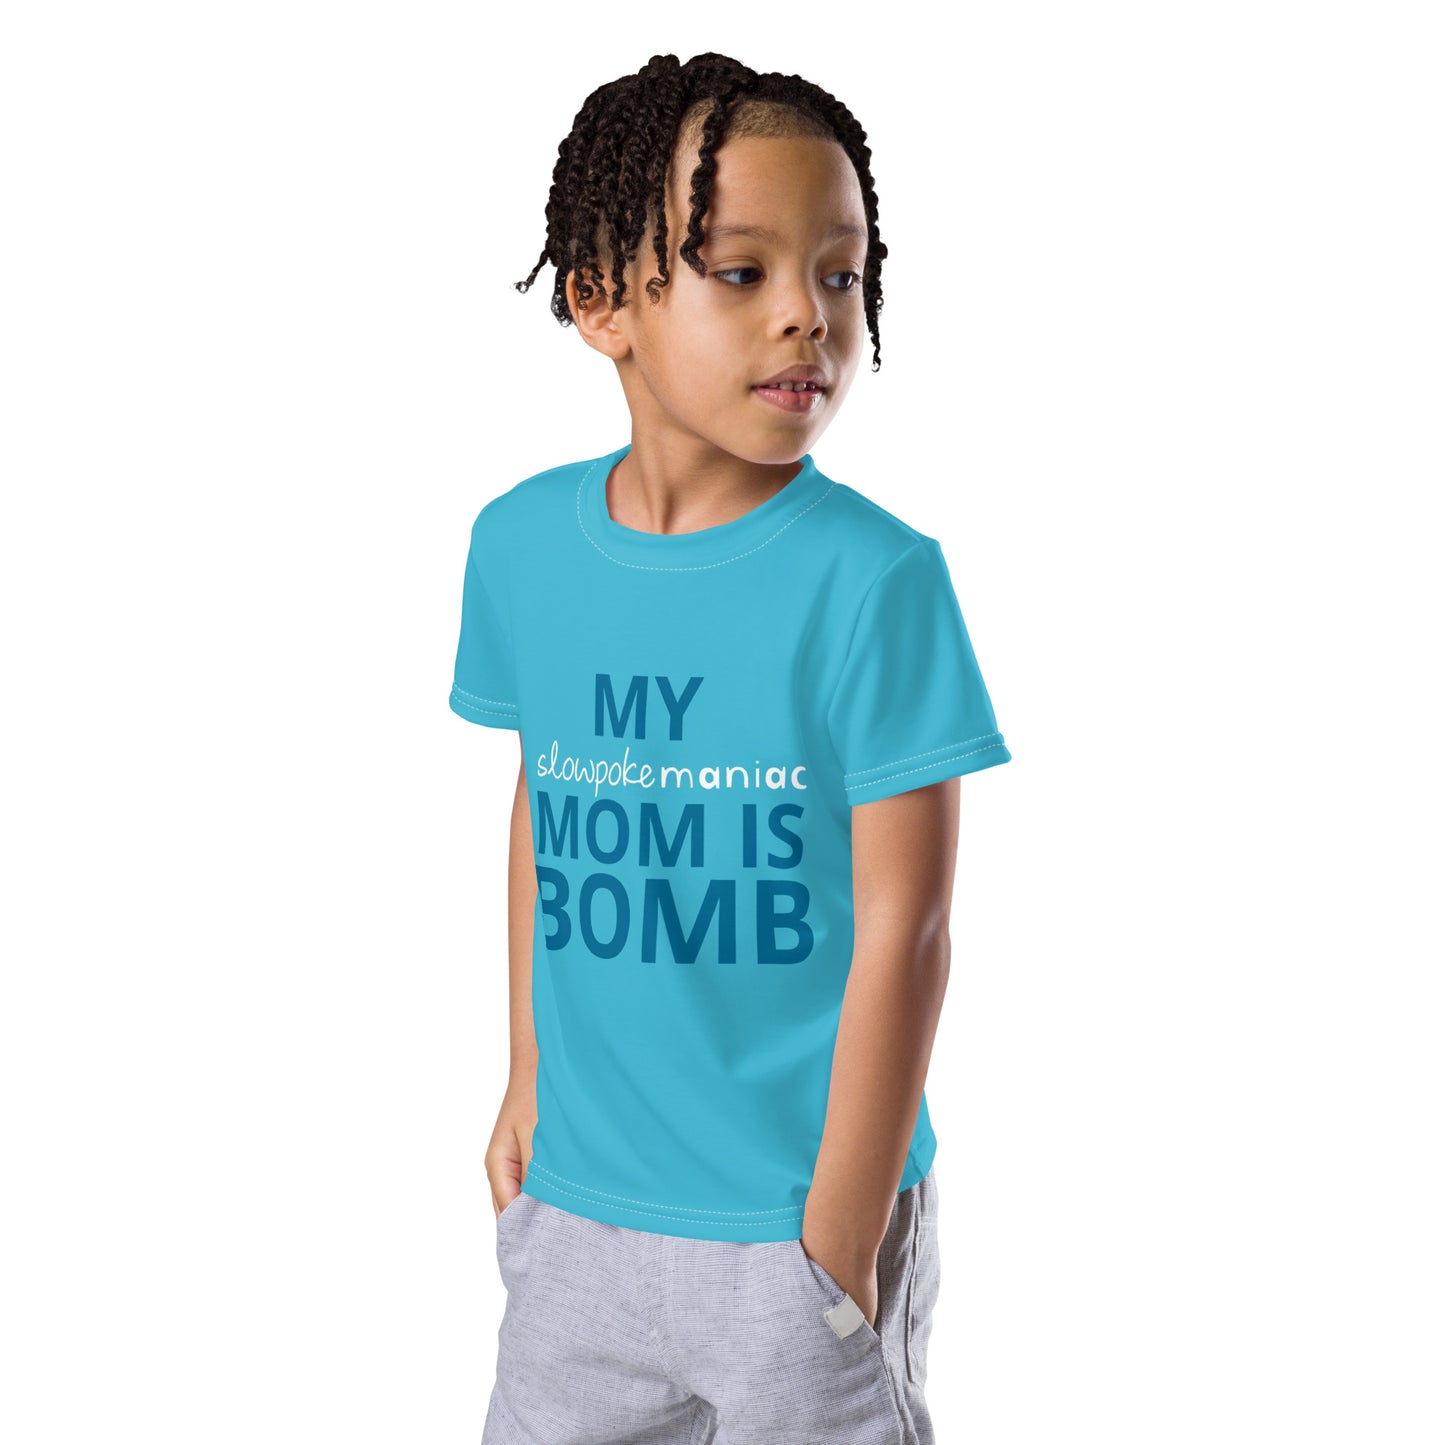 "Mom is Bomb" Crew Neck Tee